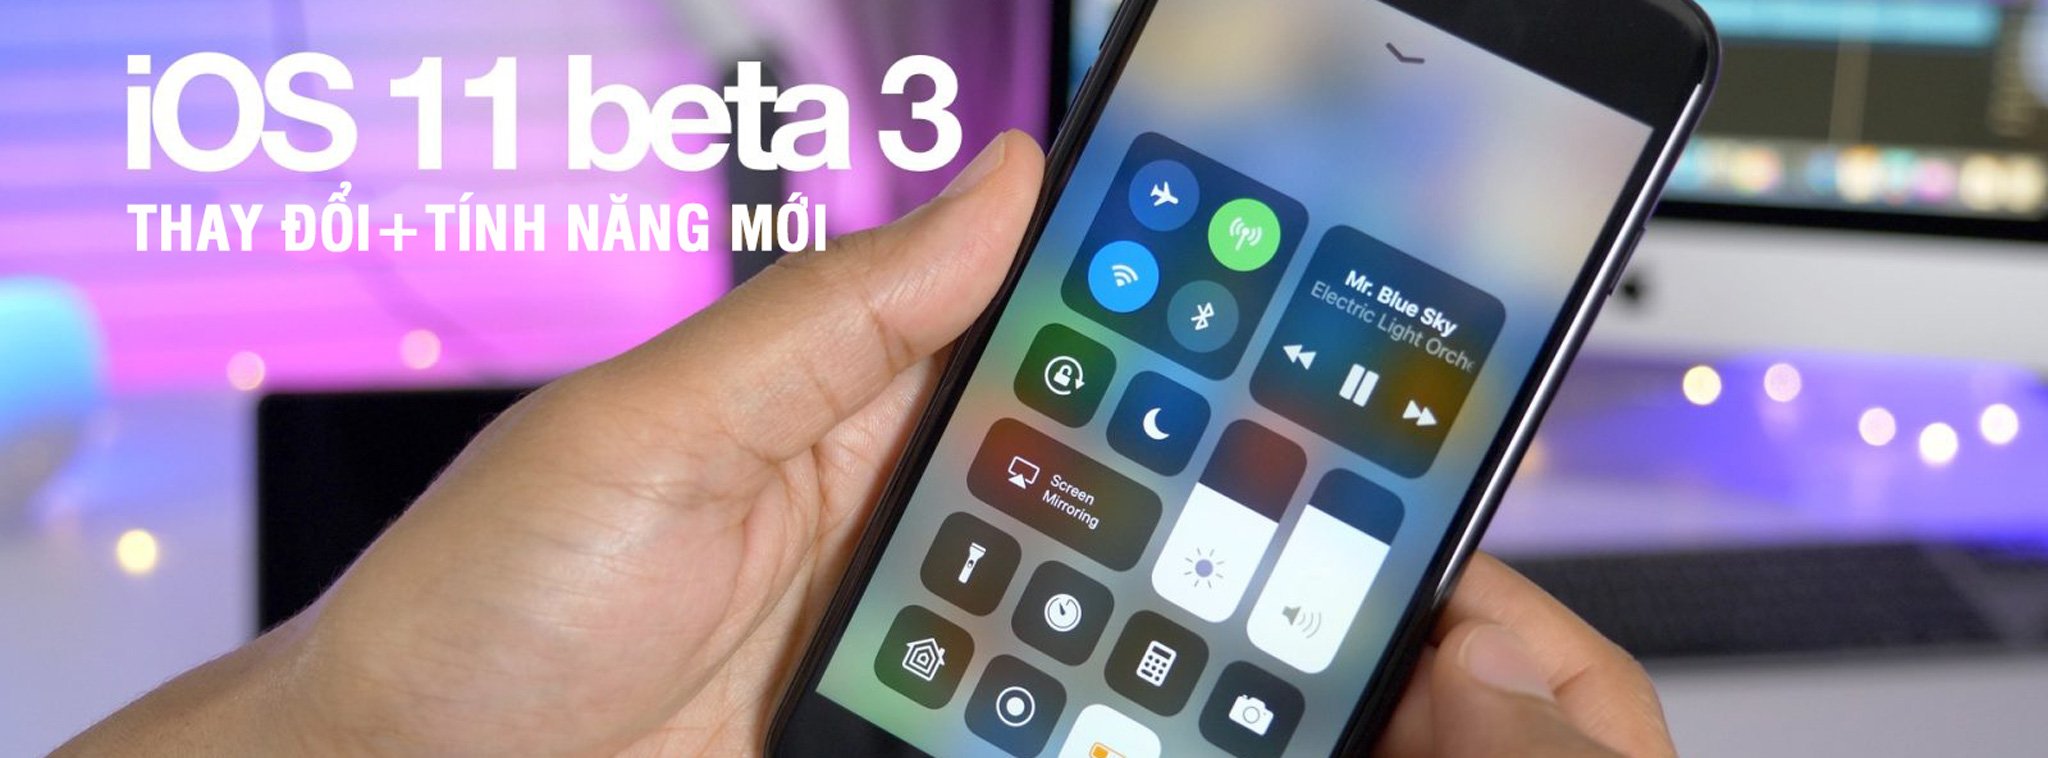 Hơn 20 thay đổi và tính năng mới trên iOS 11 Beta 3: tăng cường dùng force touch, dễ xài, thông minh